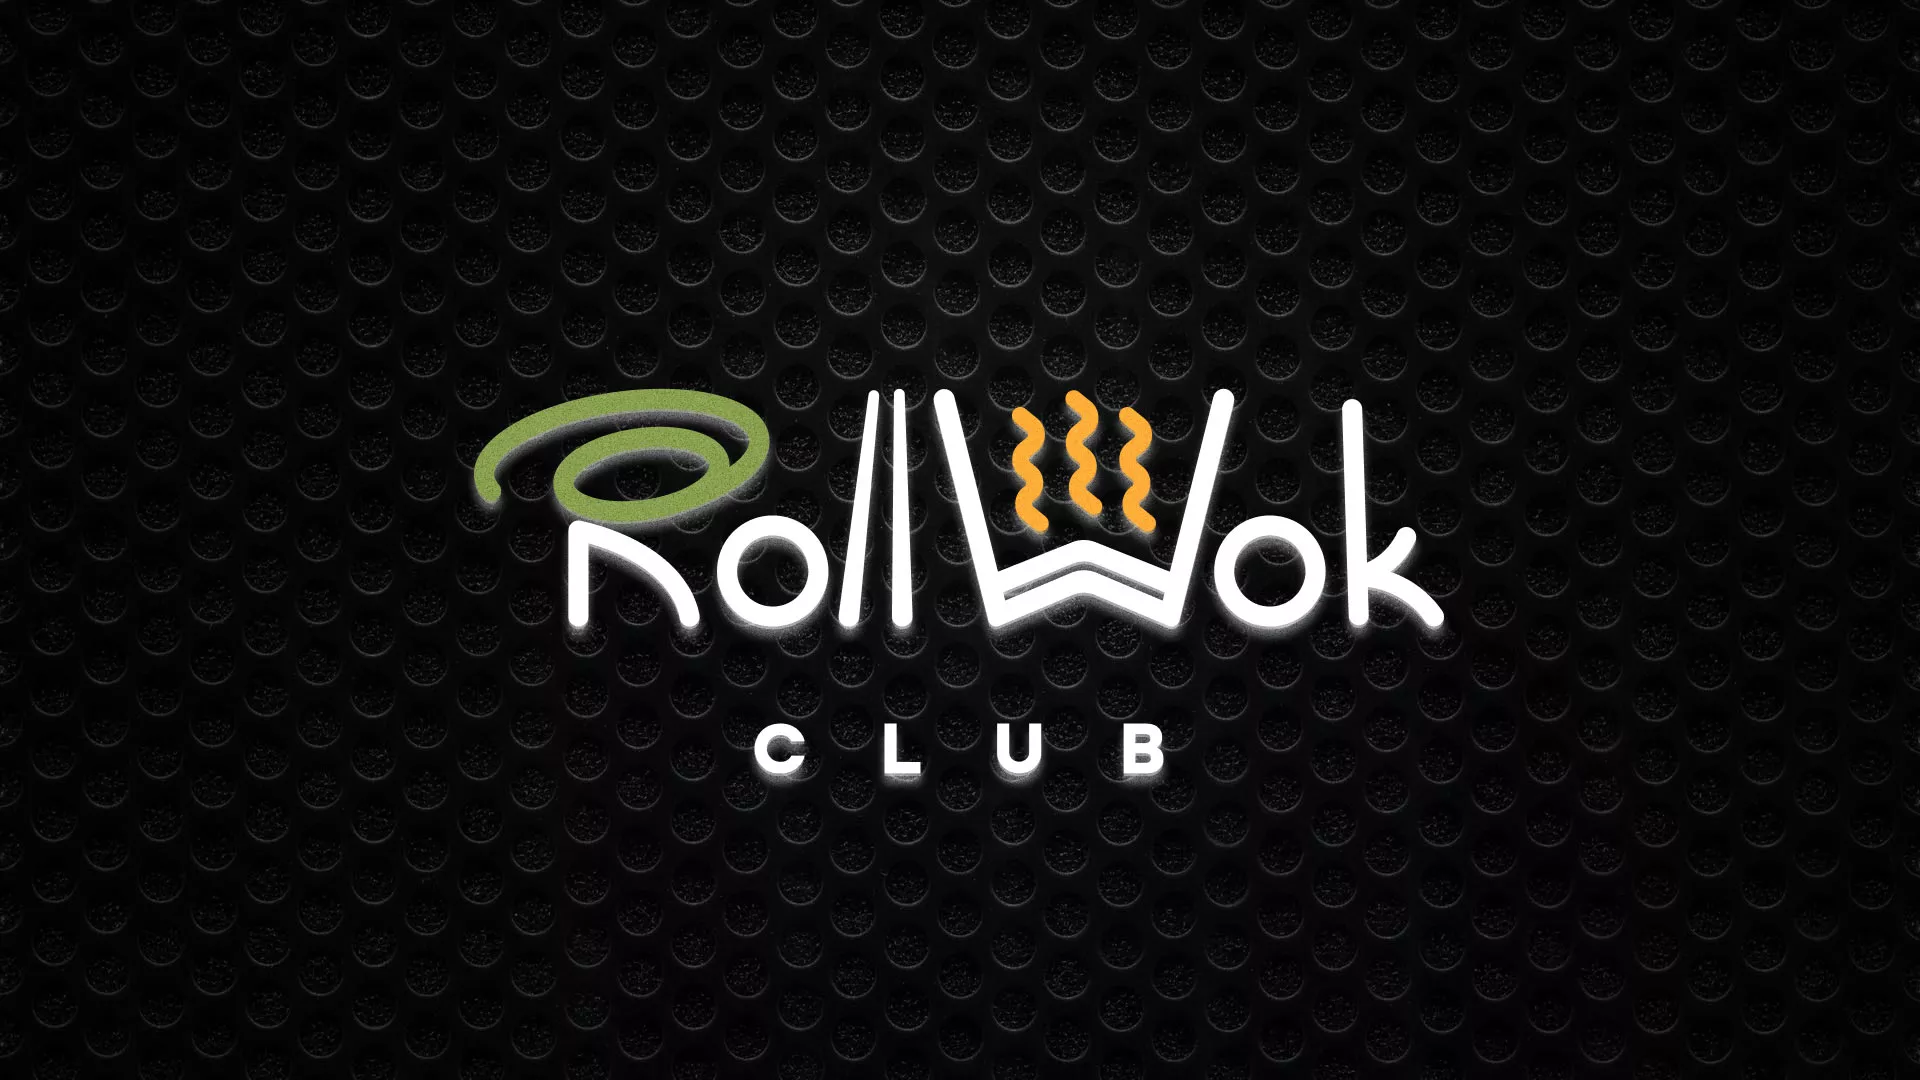 Брендирование торговых точек суши-бара «Roll Wok Club» в Железногорске-Илимском